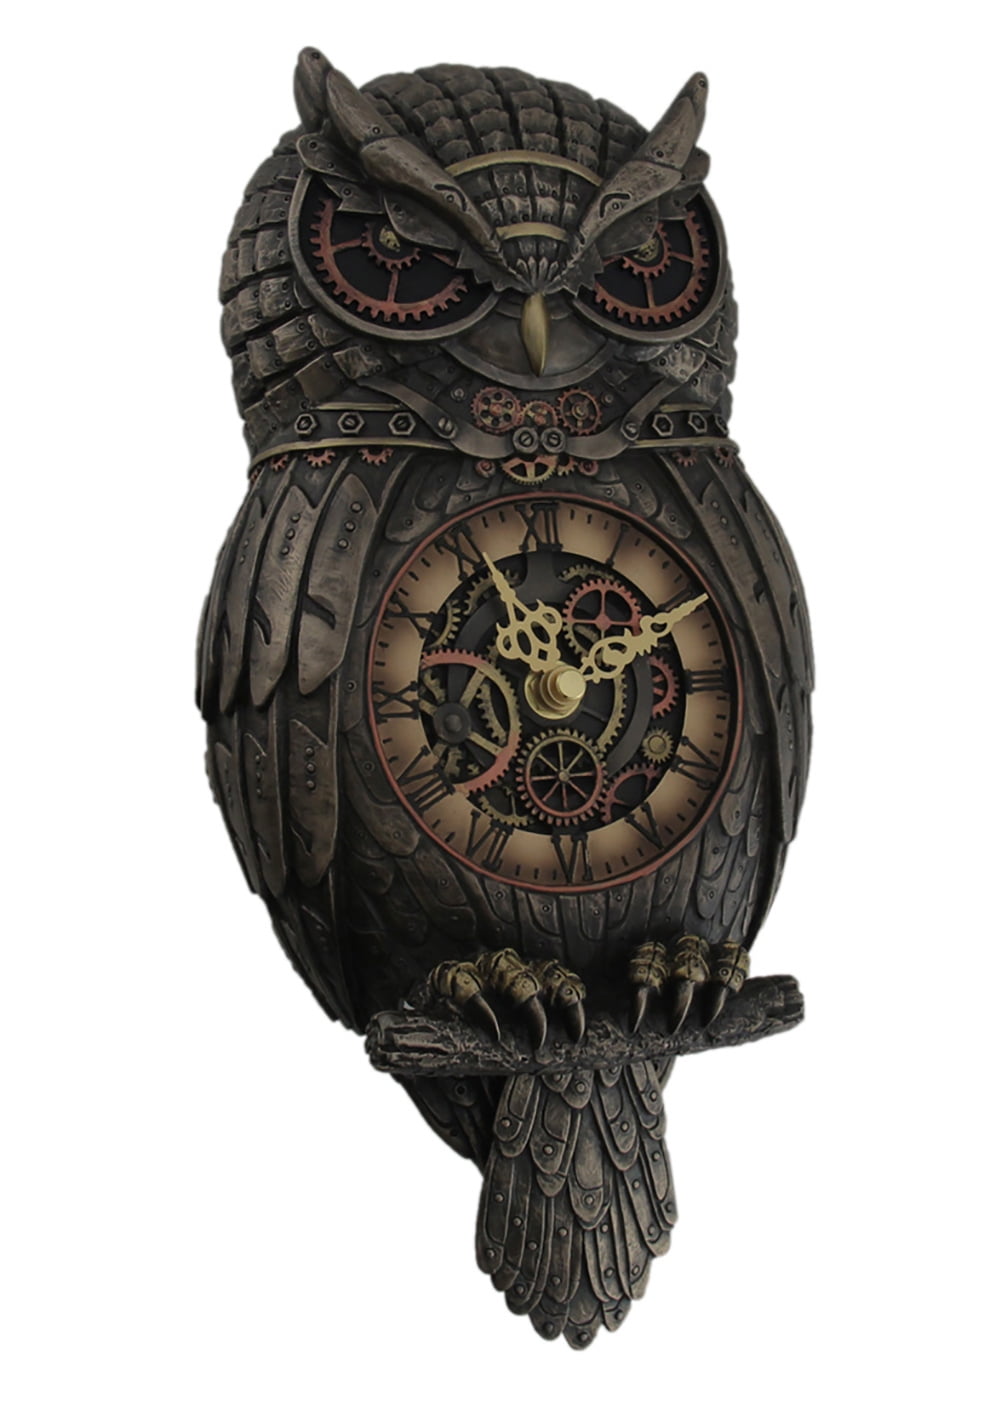 12.5" Steampunk Owl Gear Pendulum Wall Clock Statue Sculpture 